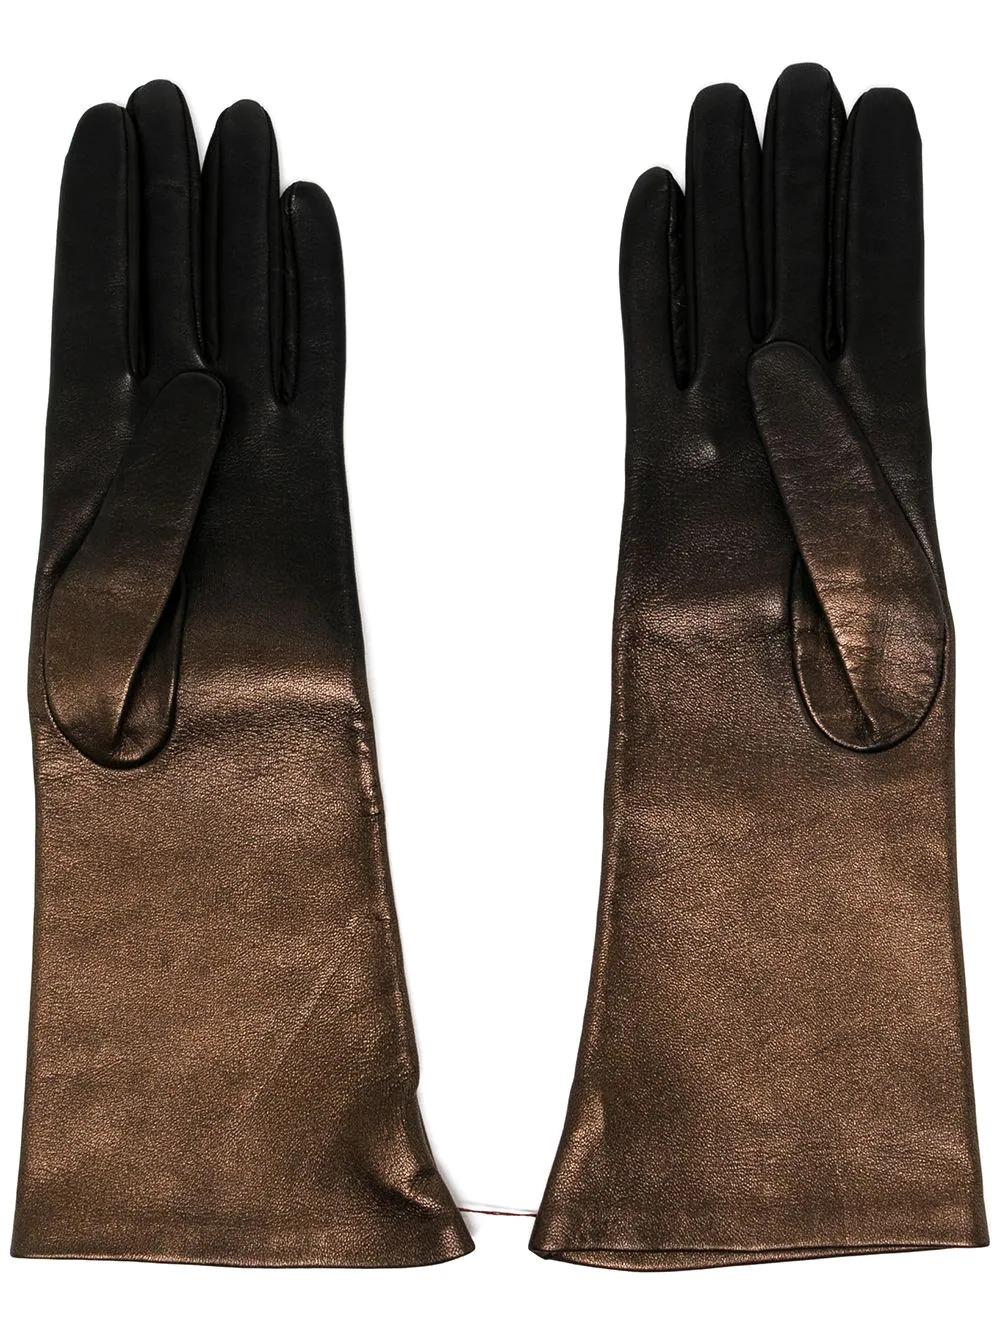 Confectionnés en cuir souple, ces gants Chanel métalliques d'occasion 2018 sont tout ce dont vous avez besoin pour garder vos mains au chaud tout au long de l'hiver. Ces gants présentent un design unique en ombre, allant du bronze métallique au noir